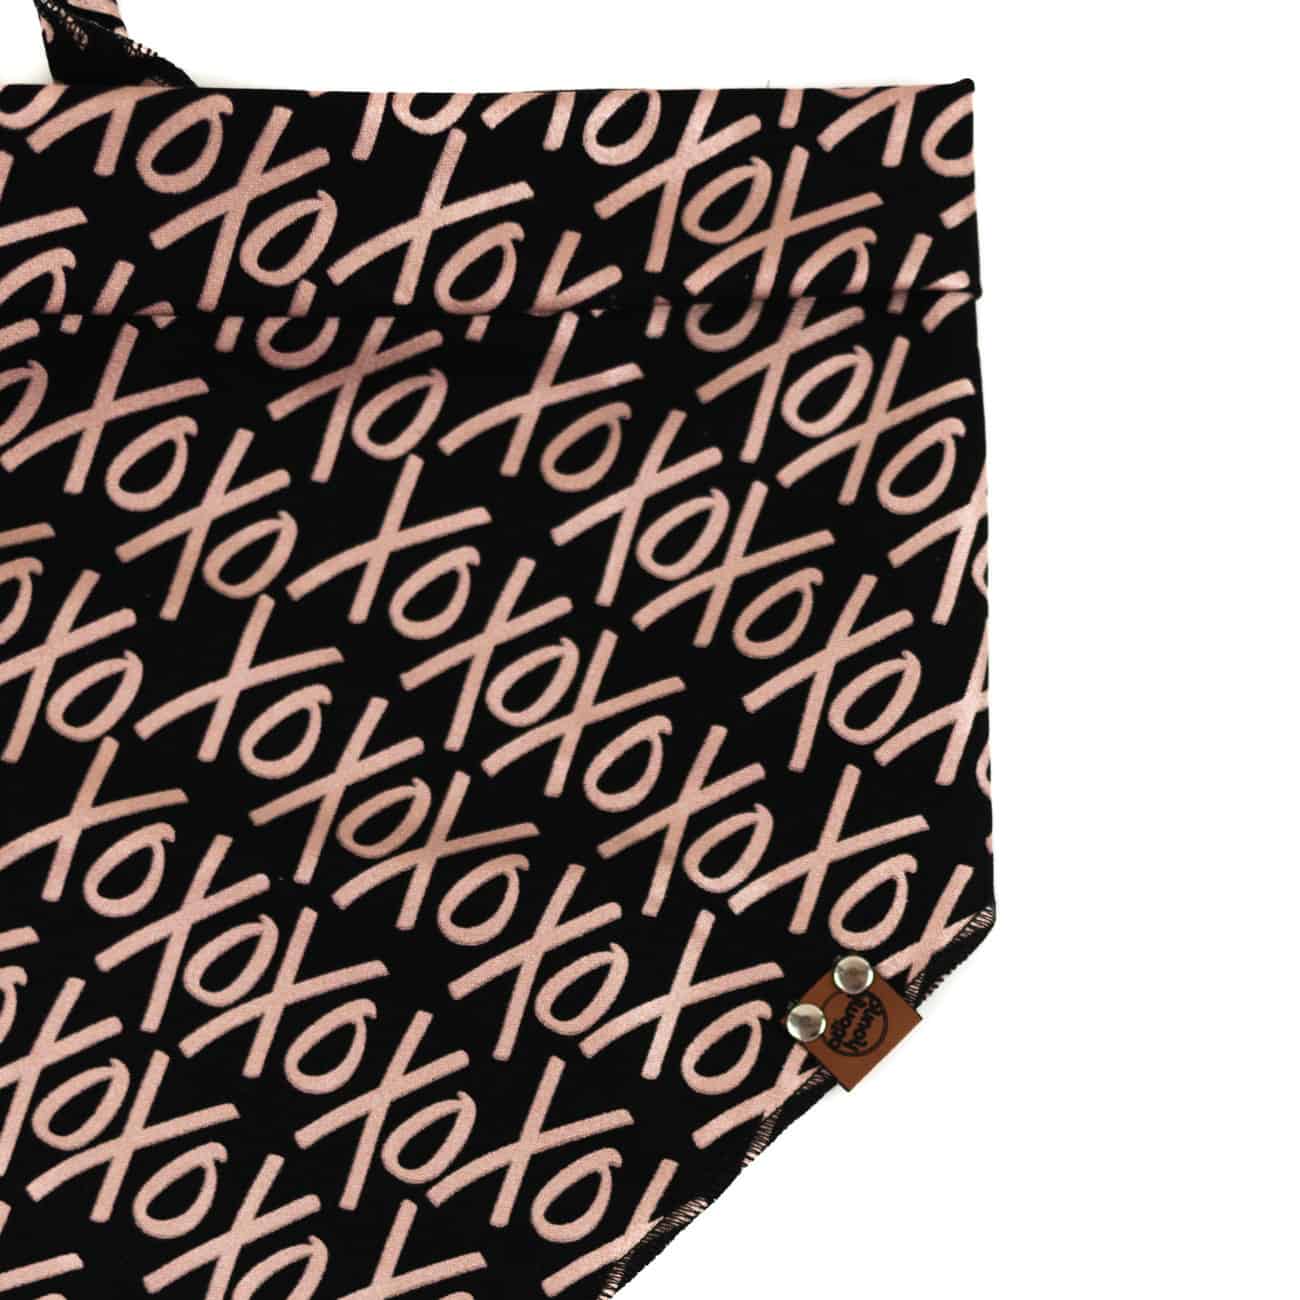 xoxo rose gold pattern on black backround dog bandana